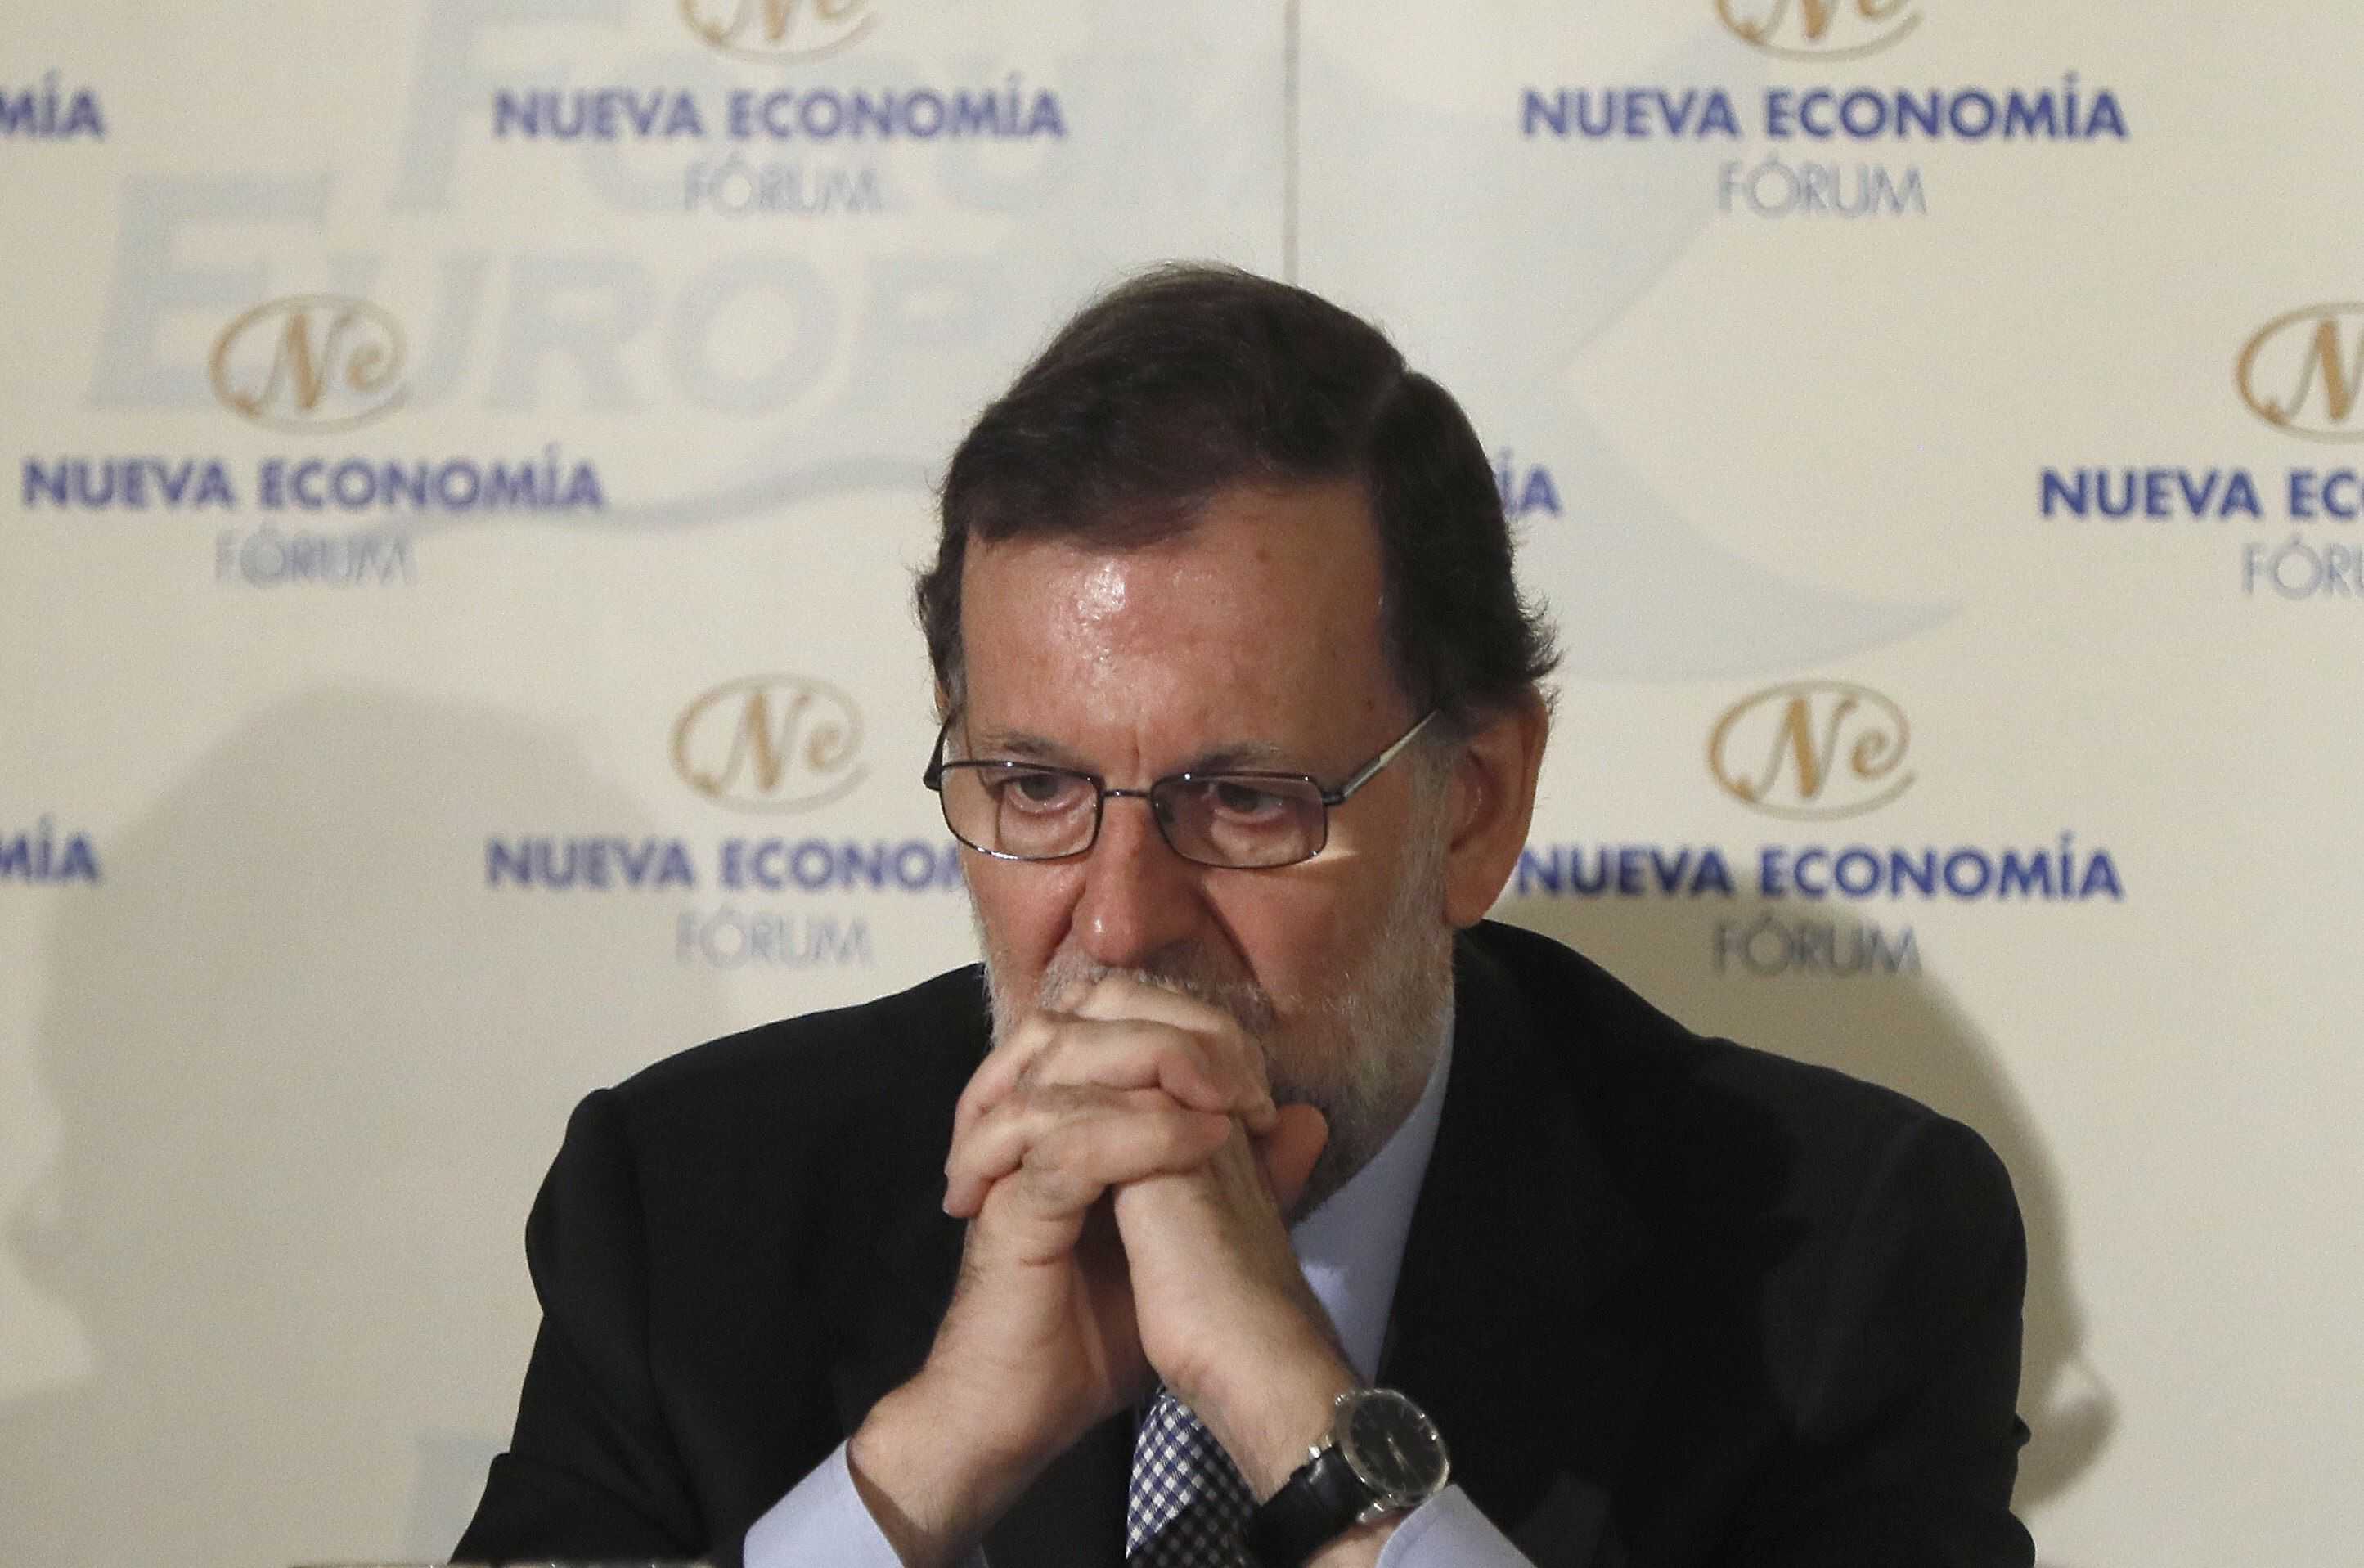 Rajoy preveu un govern que combati el procés per la "molt raonable" decisió del PSOE